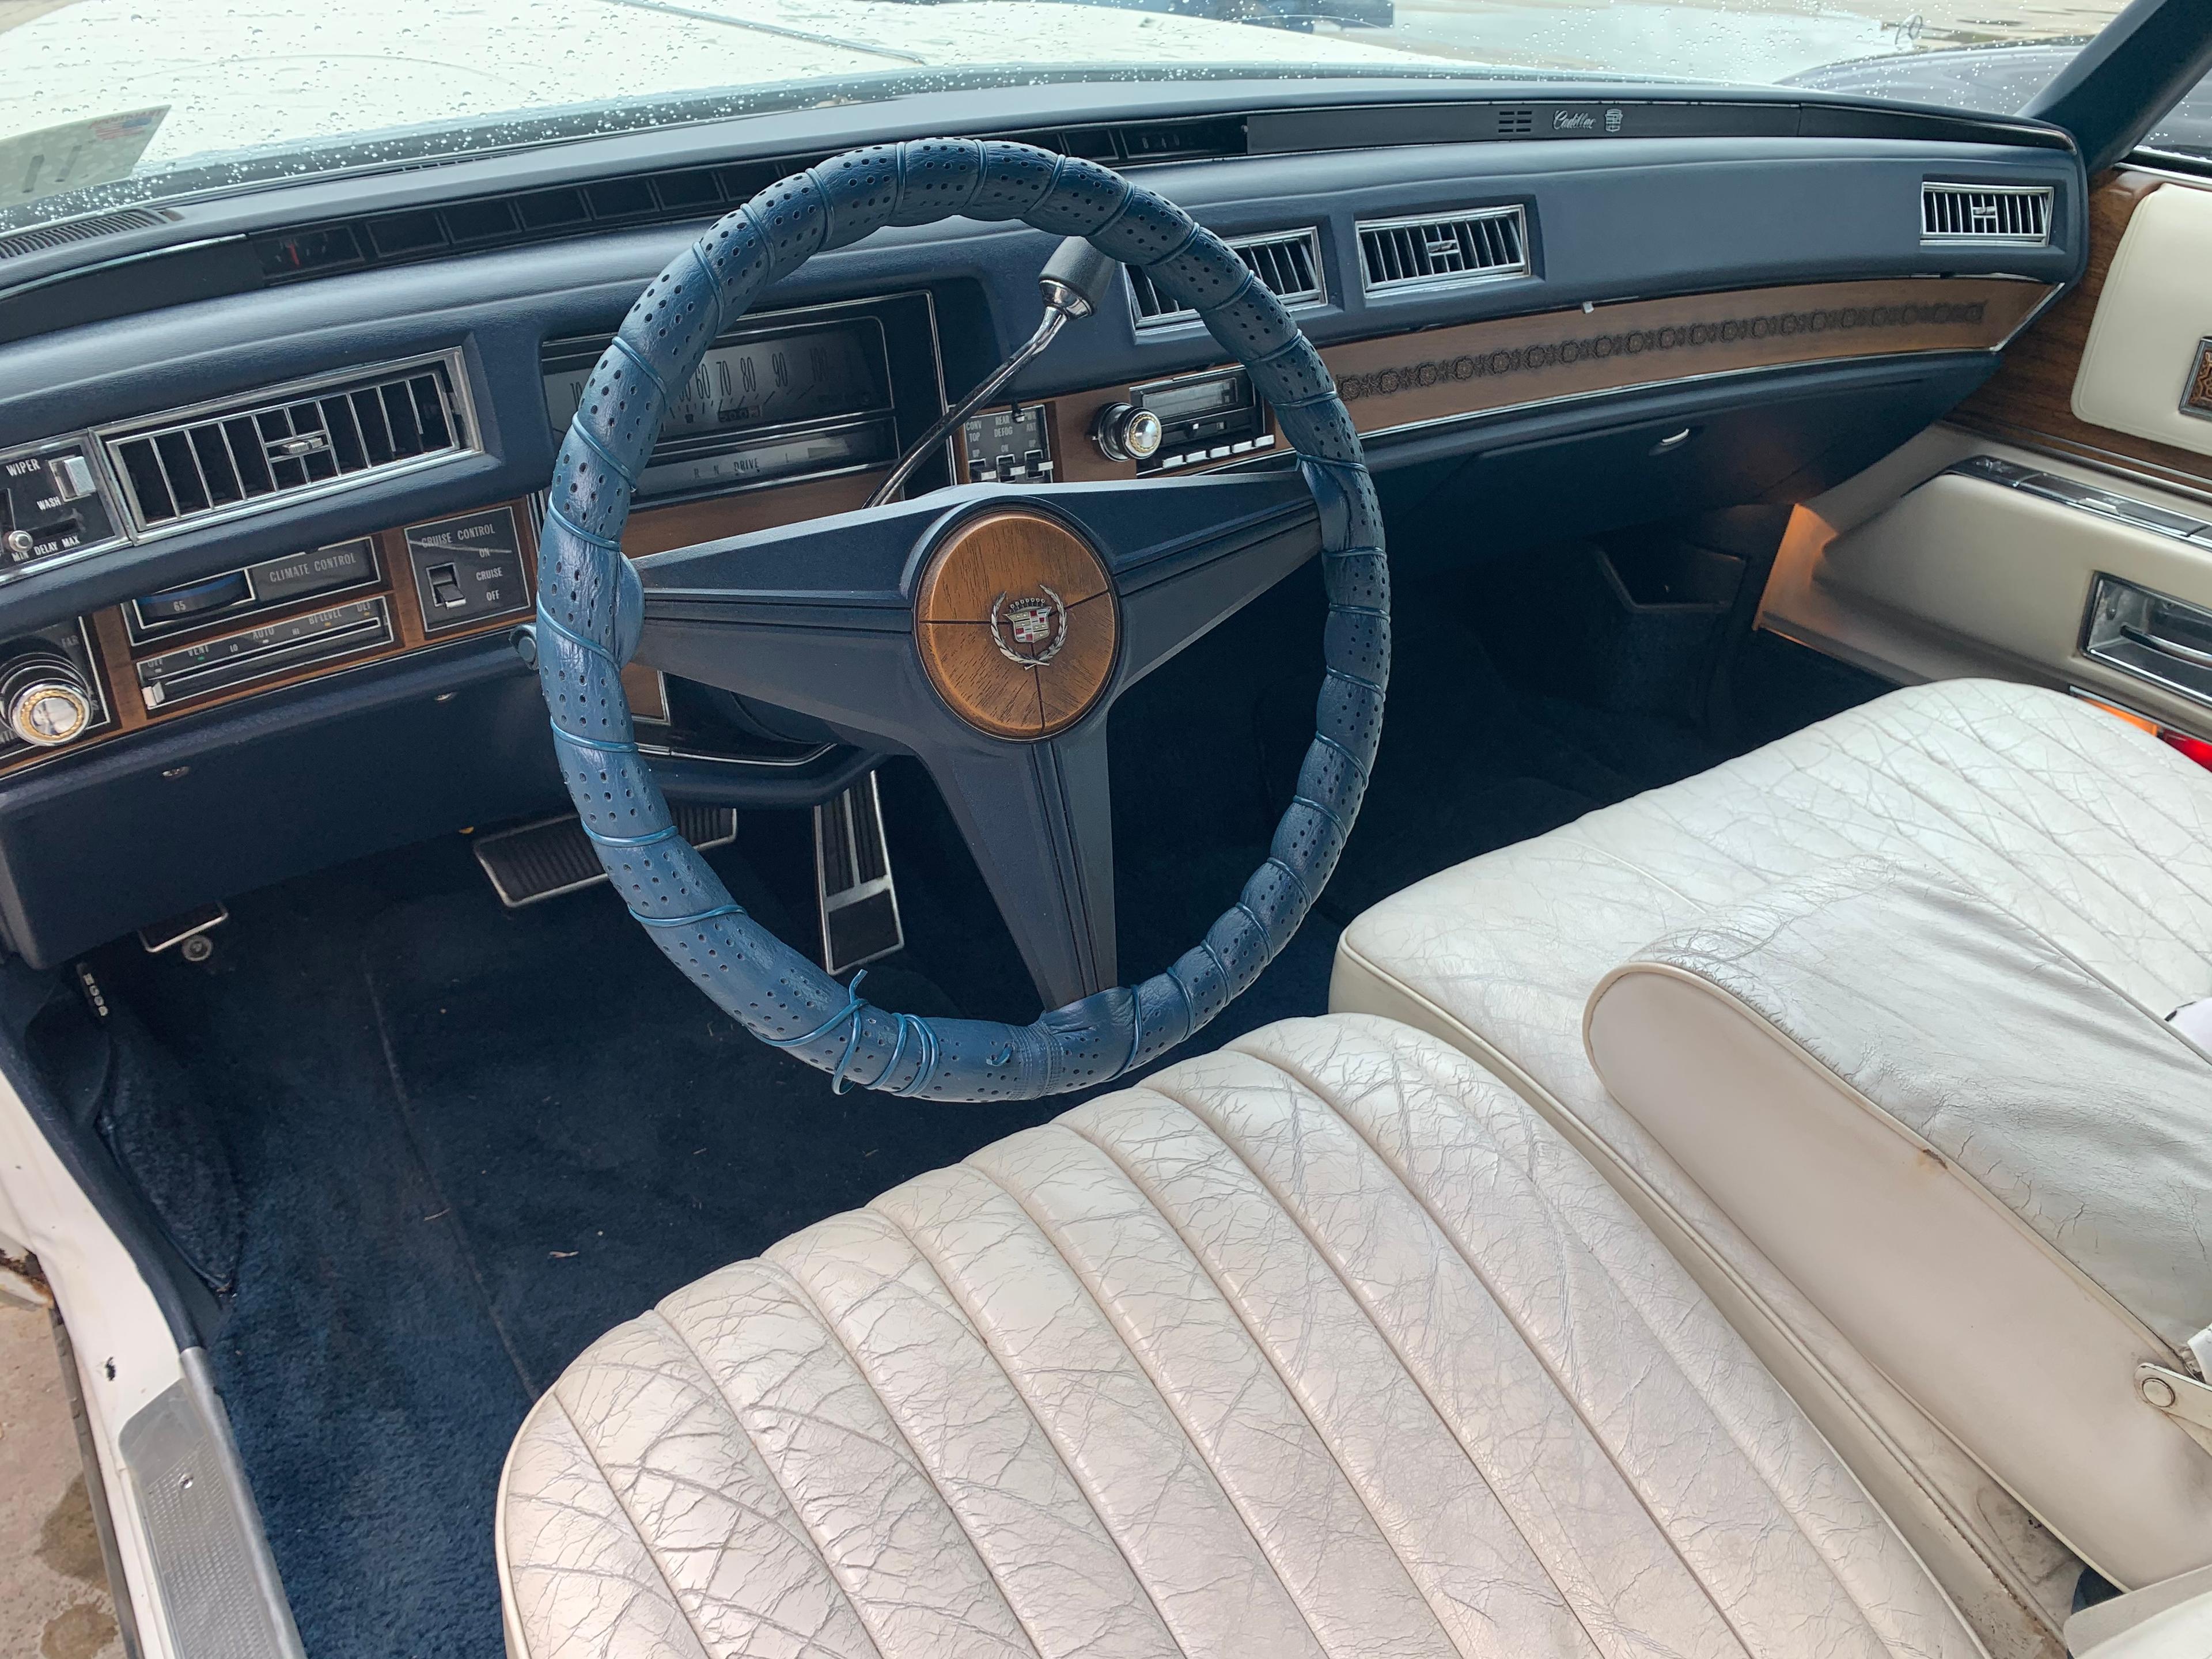 1974 Cadillac Eldorado 62,520 miles VIN 2536